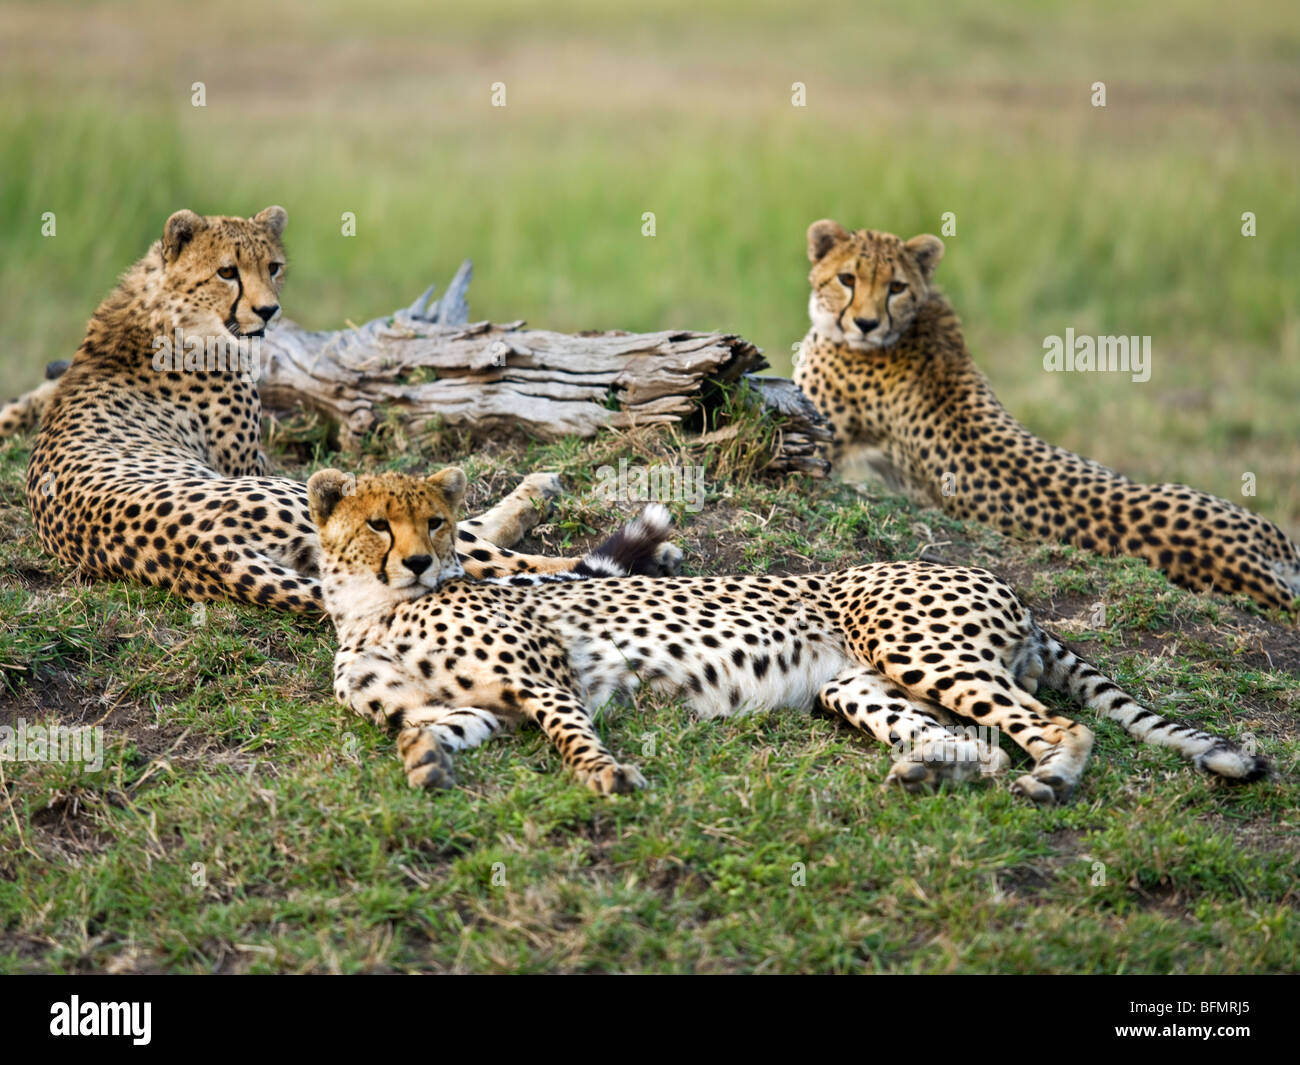 Kenya, Narok District. A family of cheetahs in the Maasai Mara Game Reserve. Stock Photo